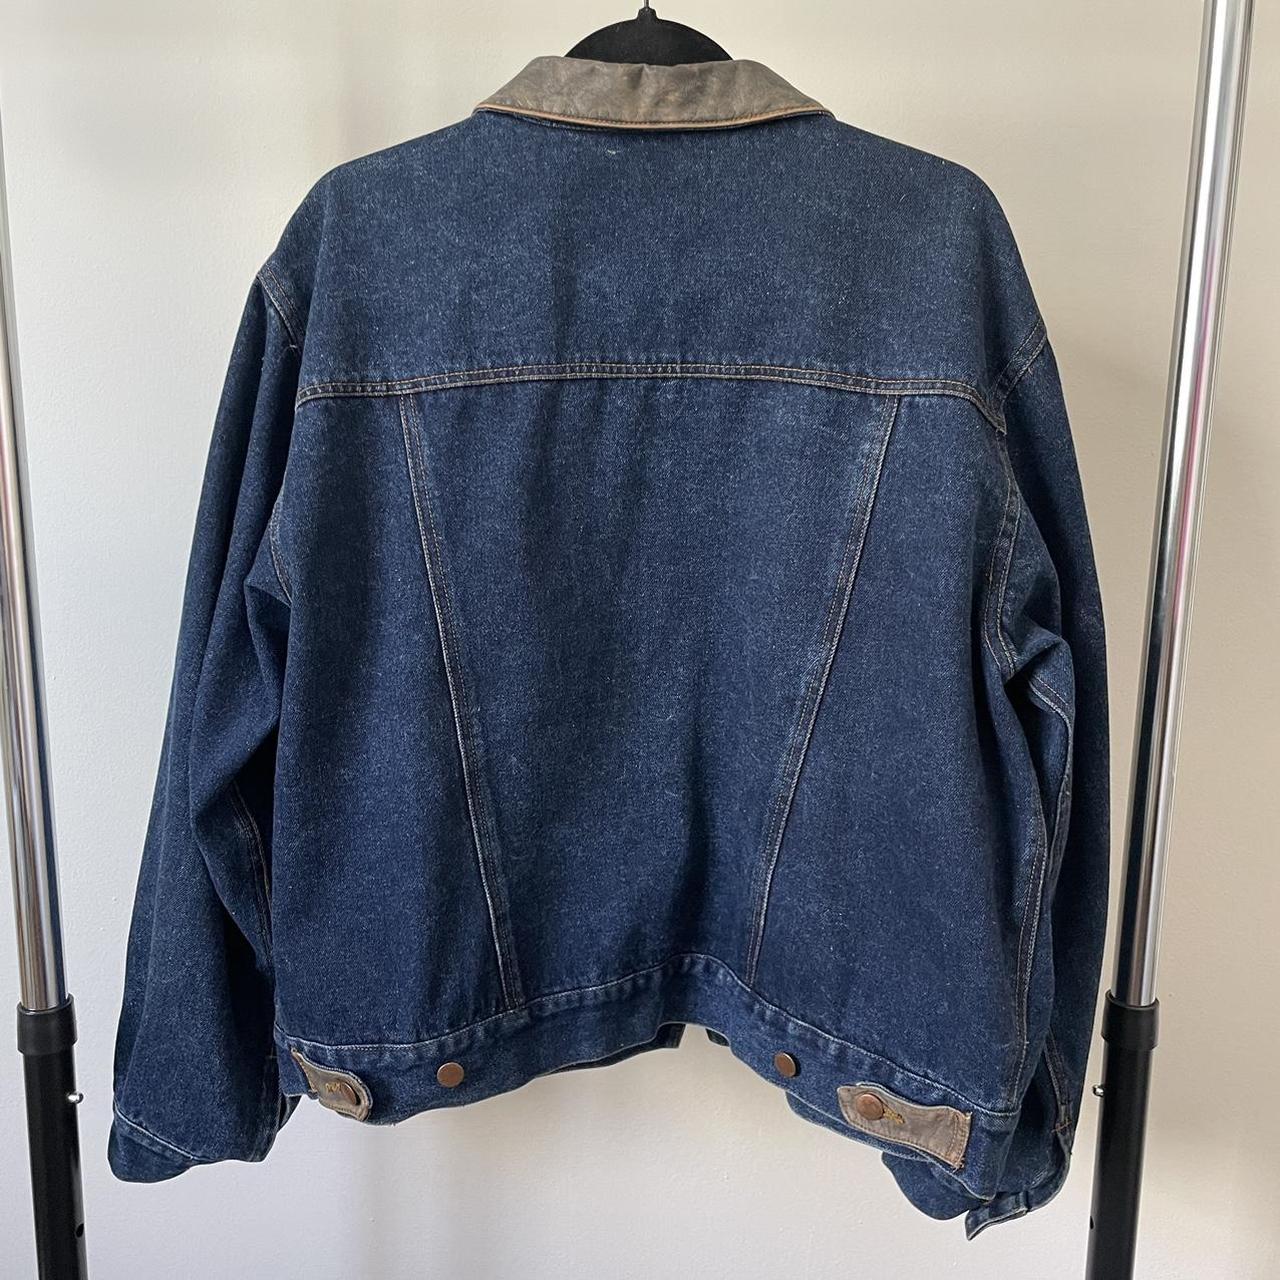 Vintage 80s denim and leather jacket. Size:... - Depop